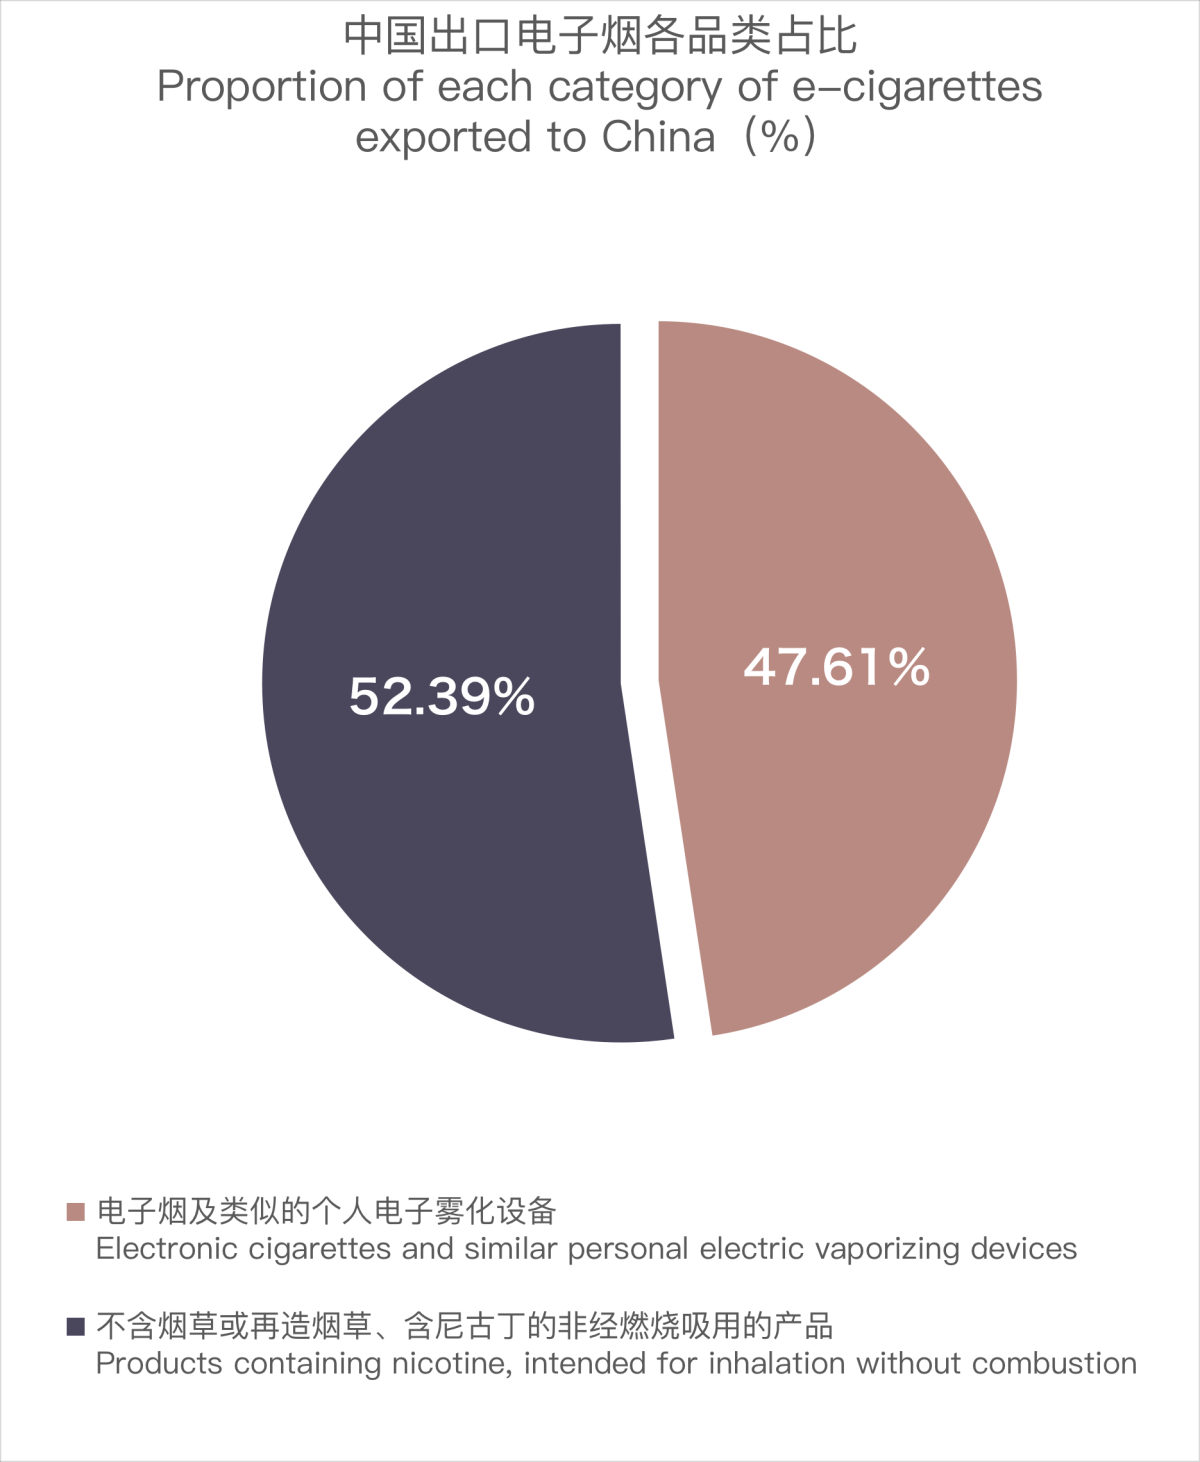 12月中国出口意大利电子烟约753万美元 环比下降18.52%